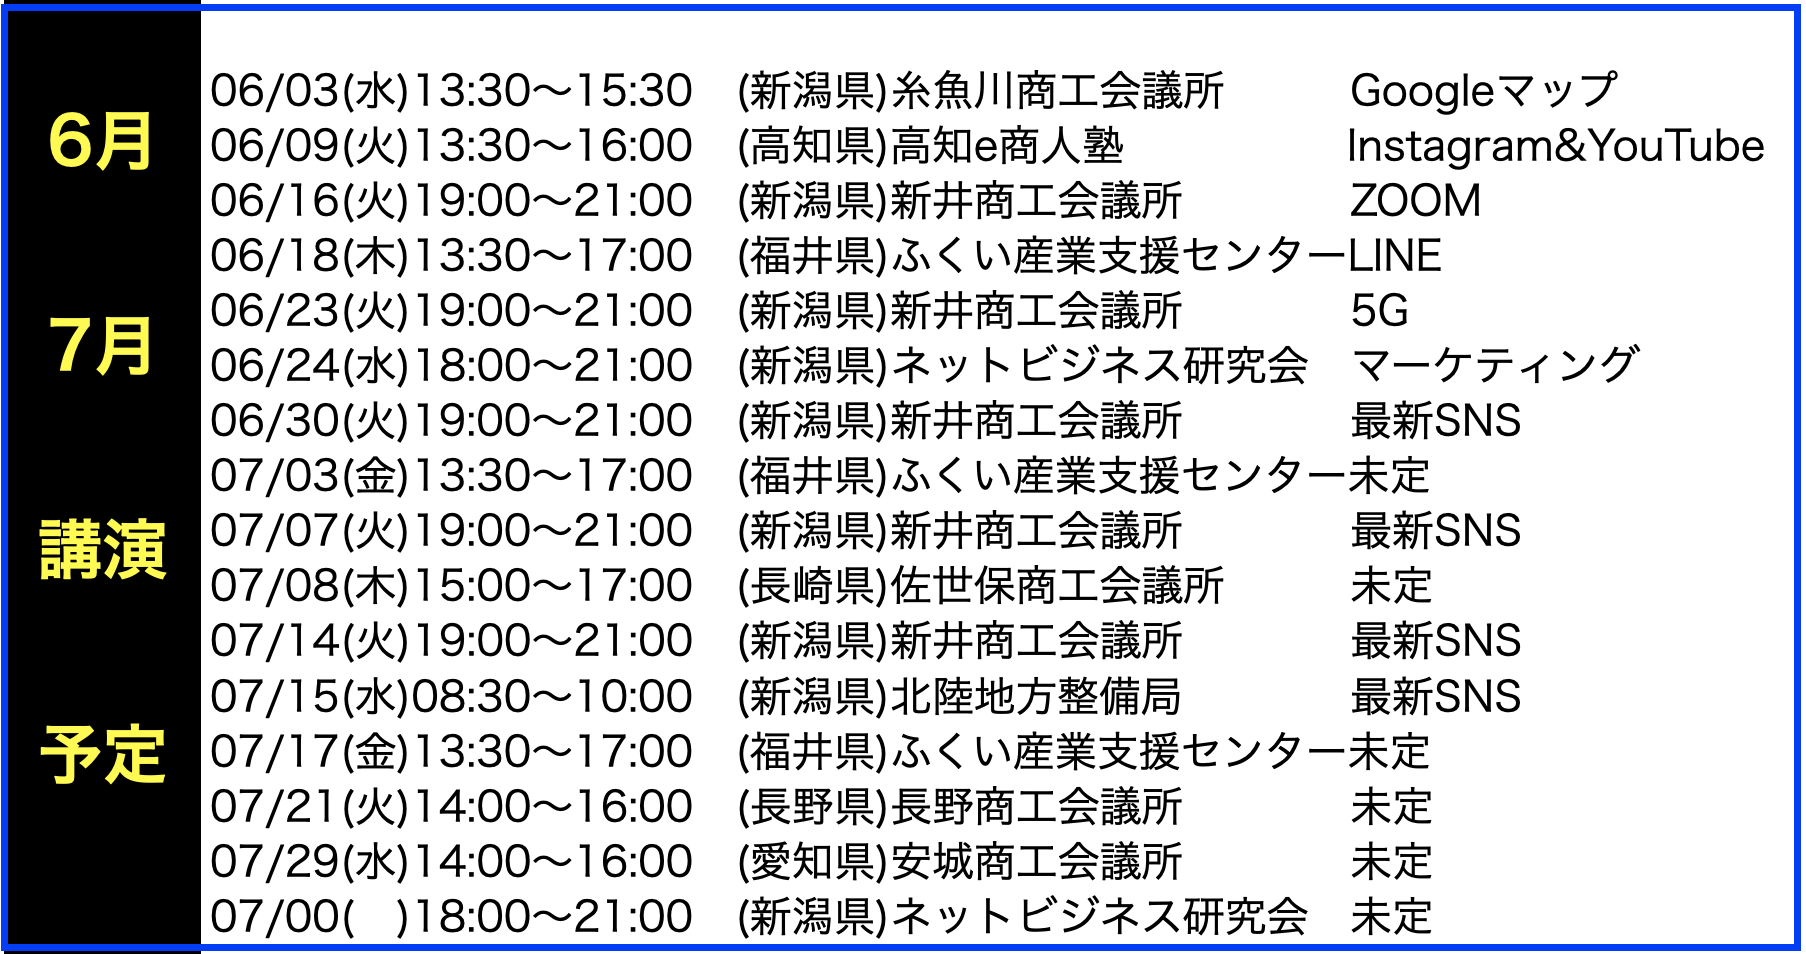 2020年6月以降の講演予定で注目セミナー(新潟県外も多数)